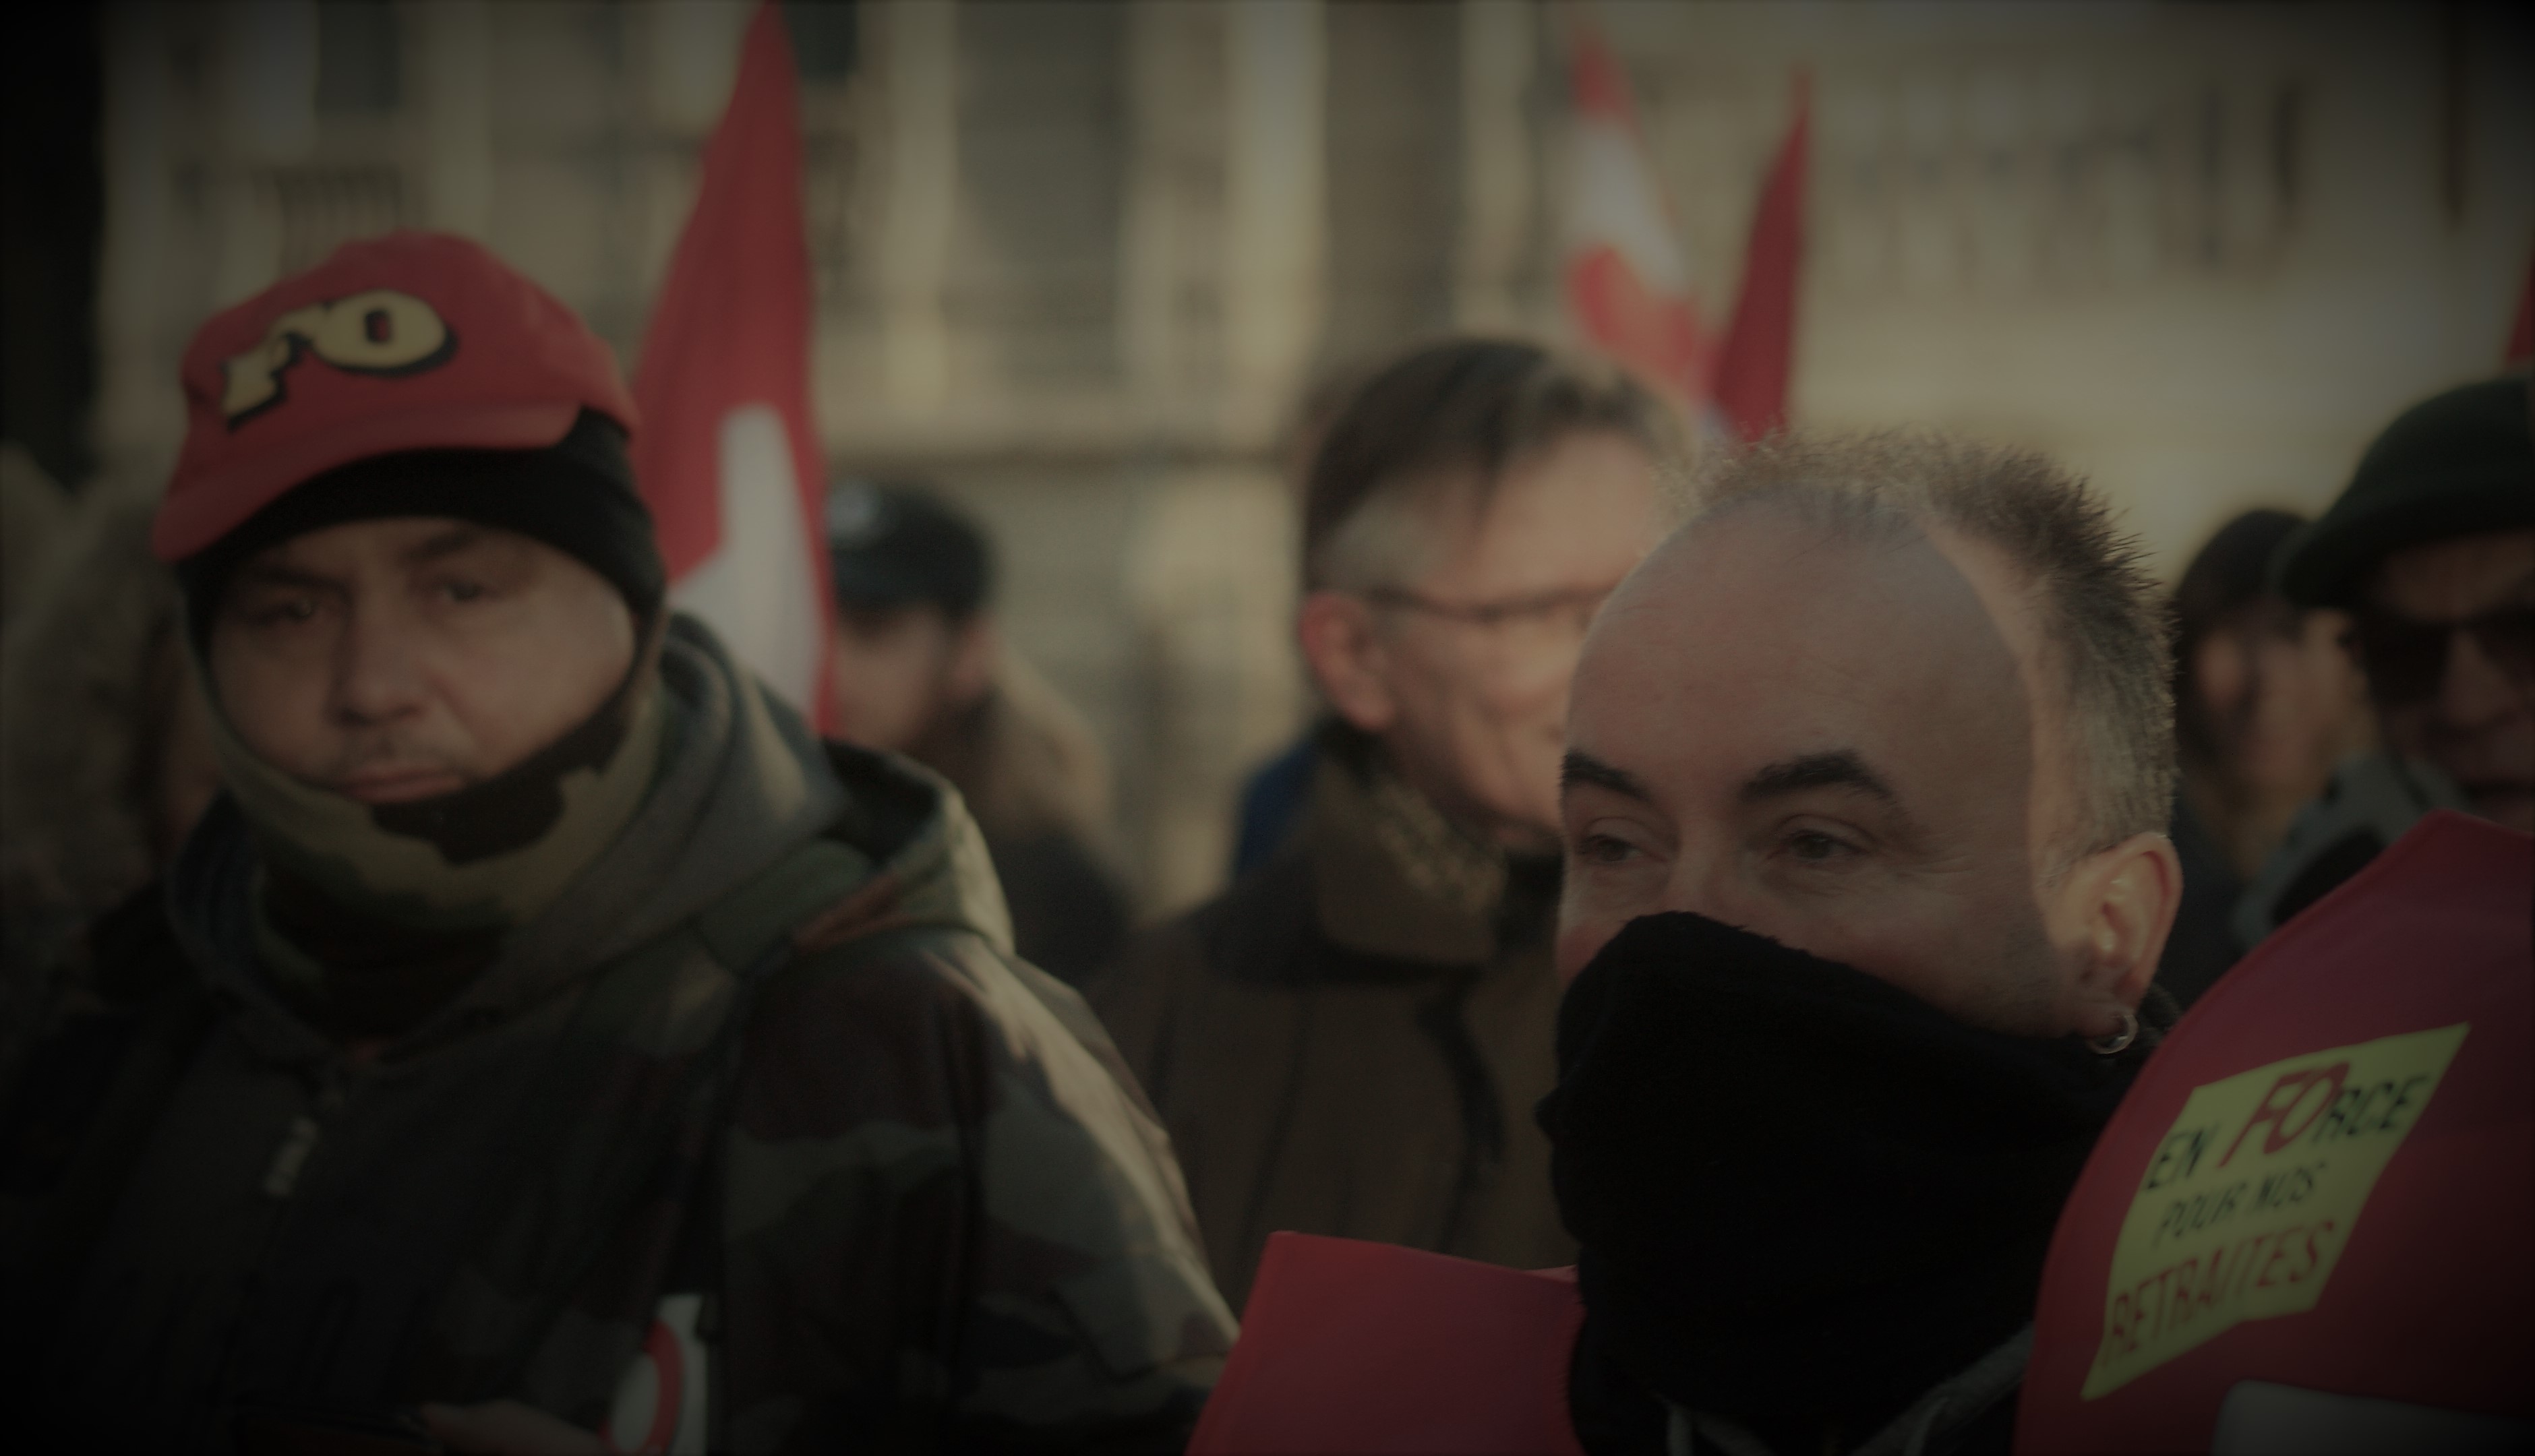 Grève interprofessionnelle - Reims - Mardi 10 décembre 2019